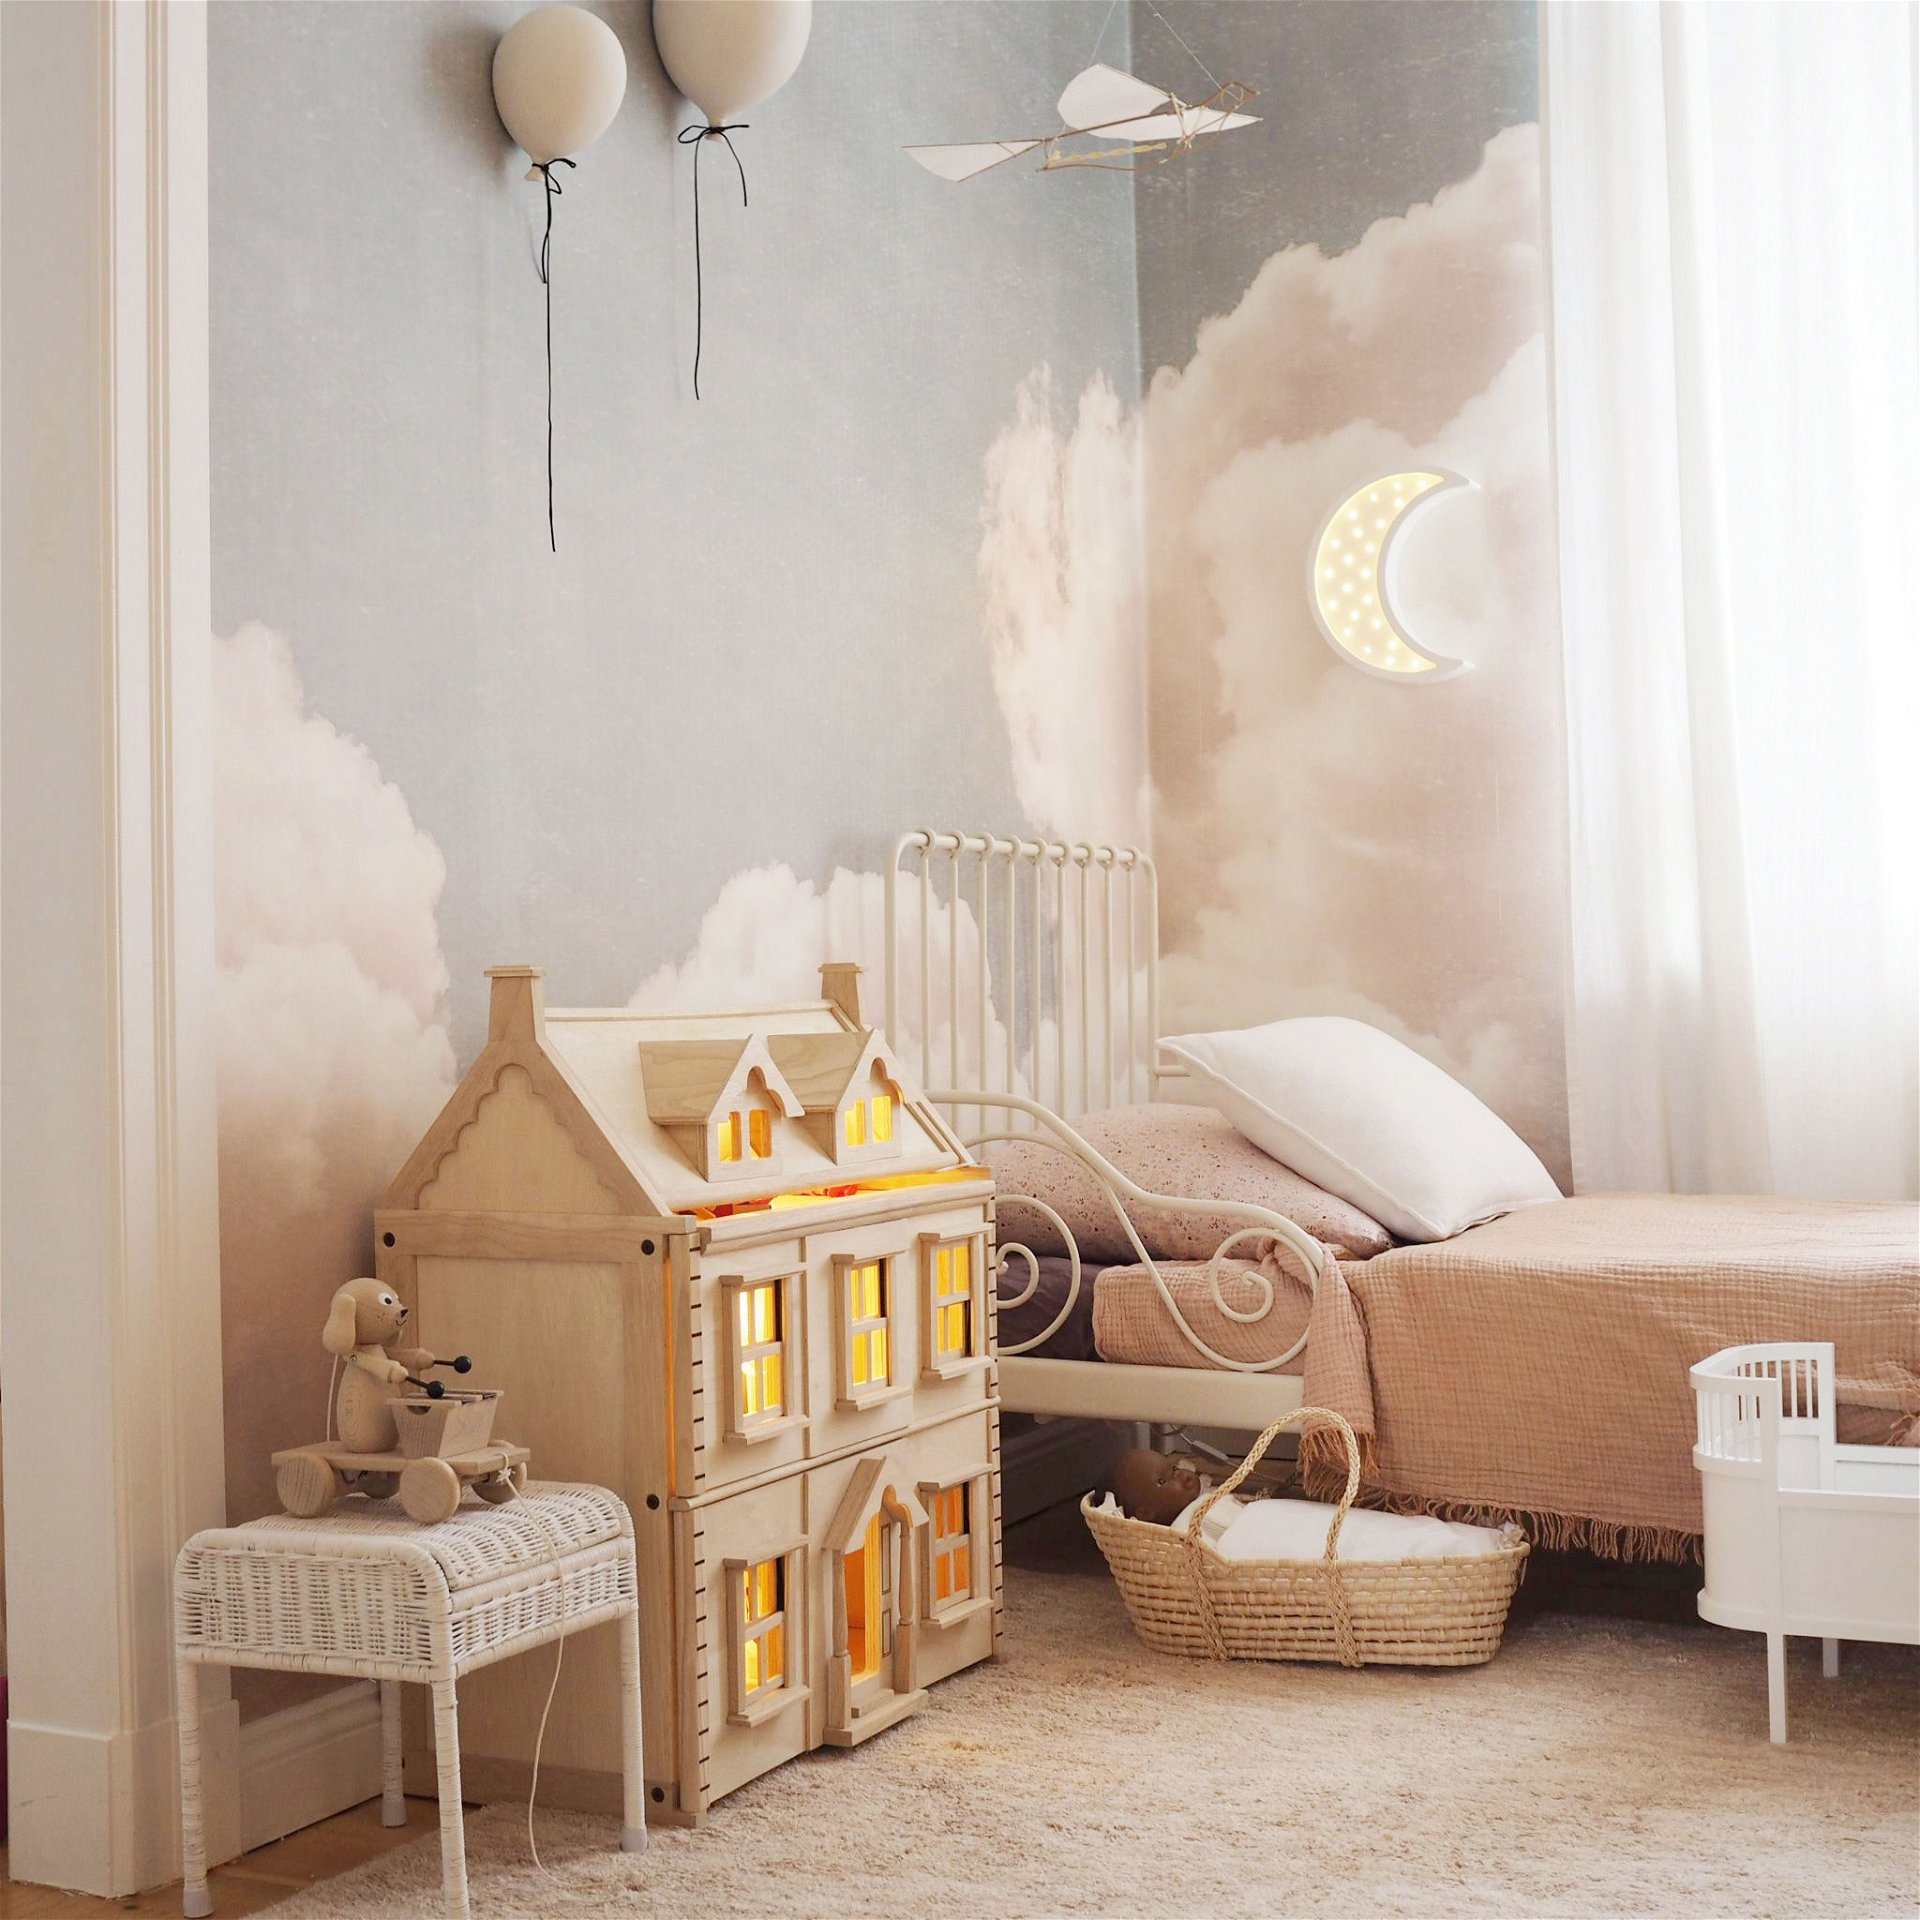 Traumlandschaft: Photowalls sind en vogue und verwandeln Kinderzimmer in romantische Oasen der Ruhe, wie hier mit der Tapete »Blush Clouds Daydream«. photowall.at